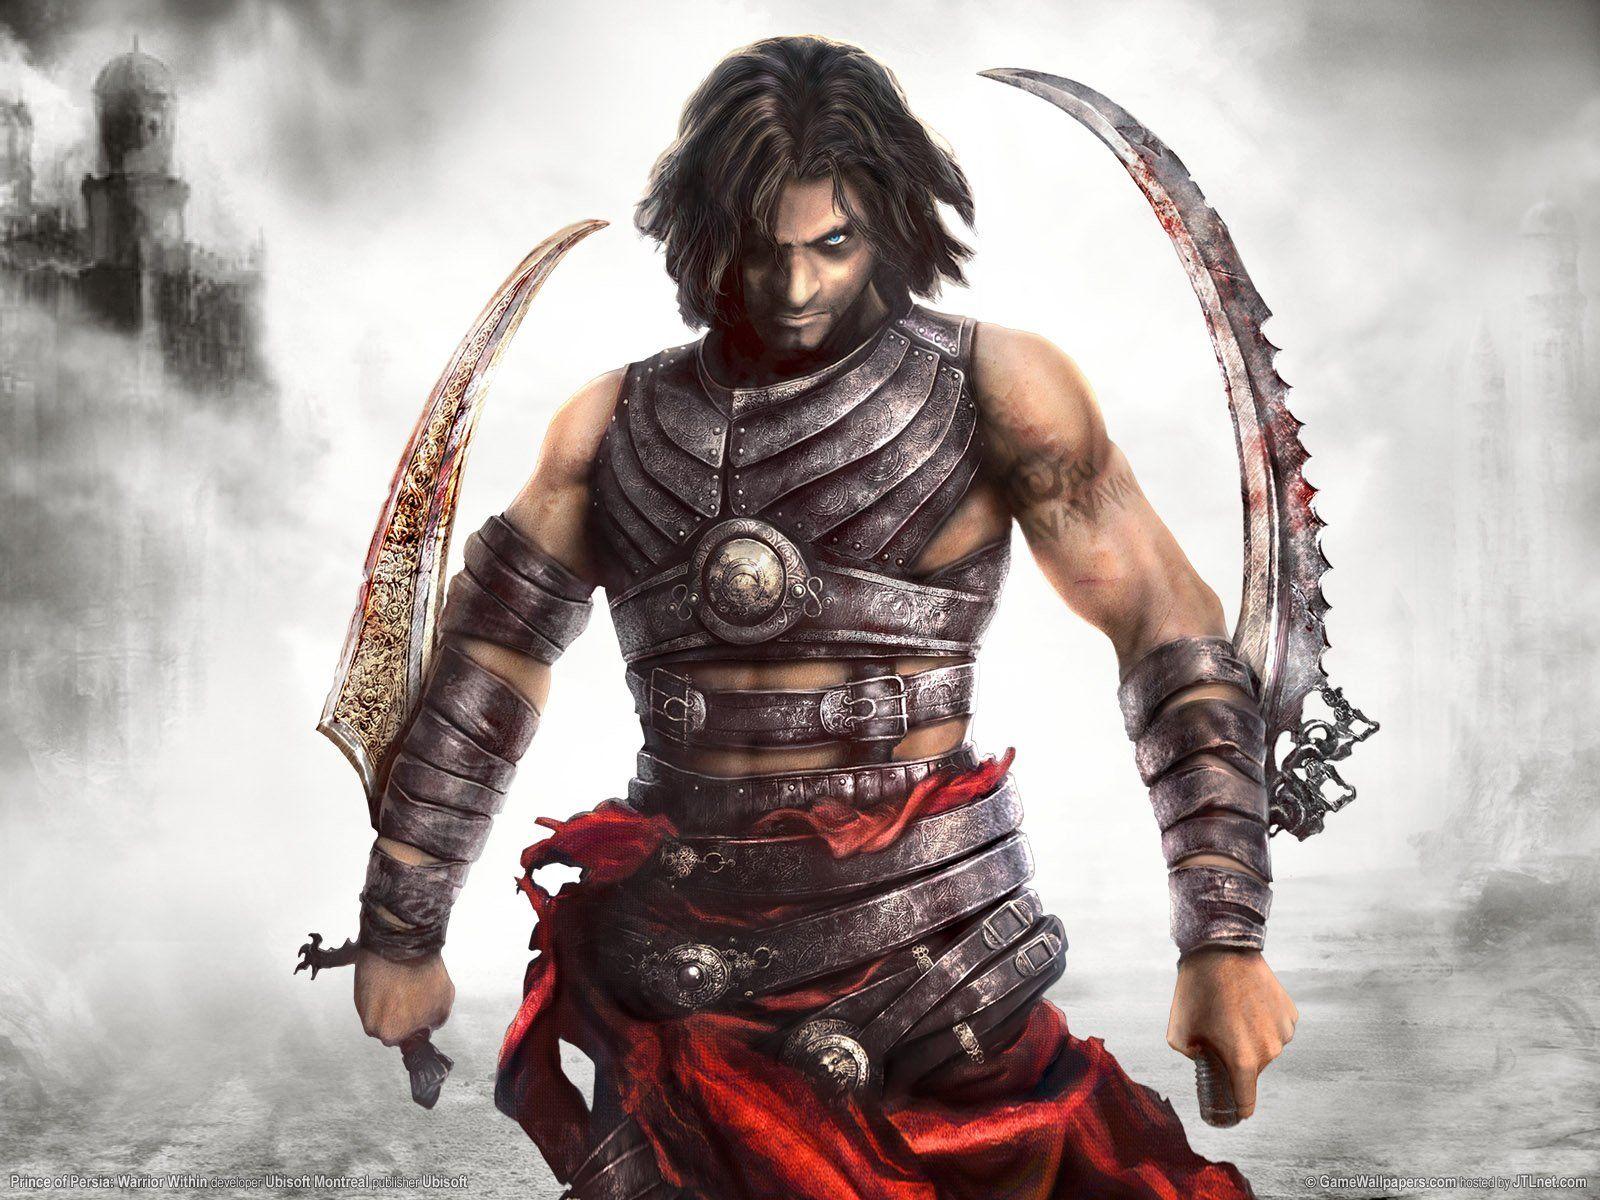 The Best Top Desktop Prince Of Persia Wallpaper 11 Game Wallpaper Prince Of Persia Warrior